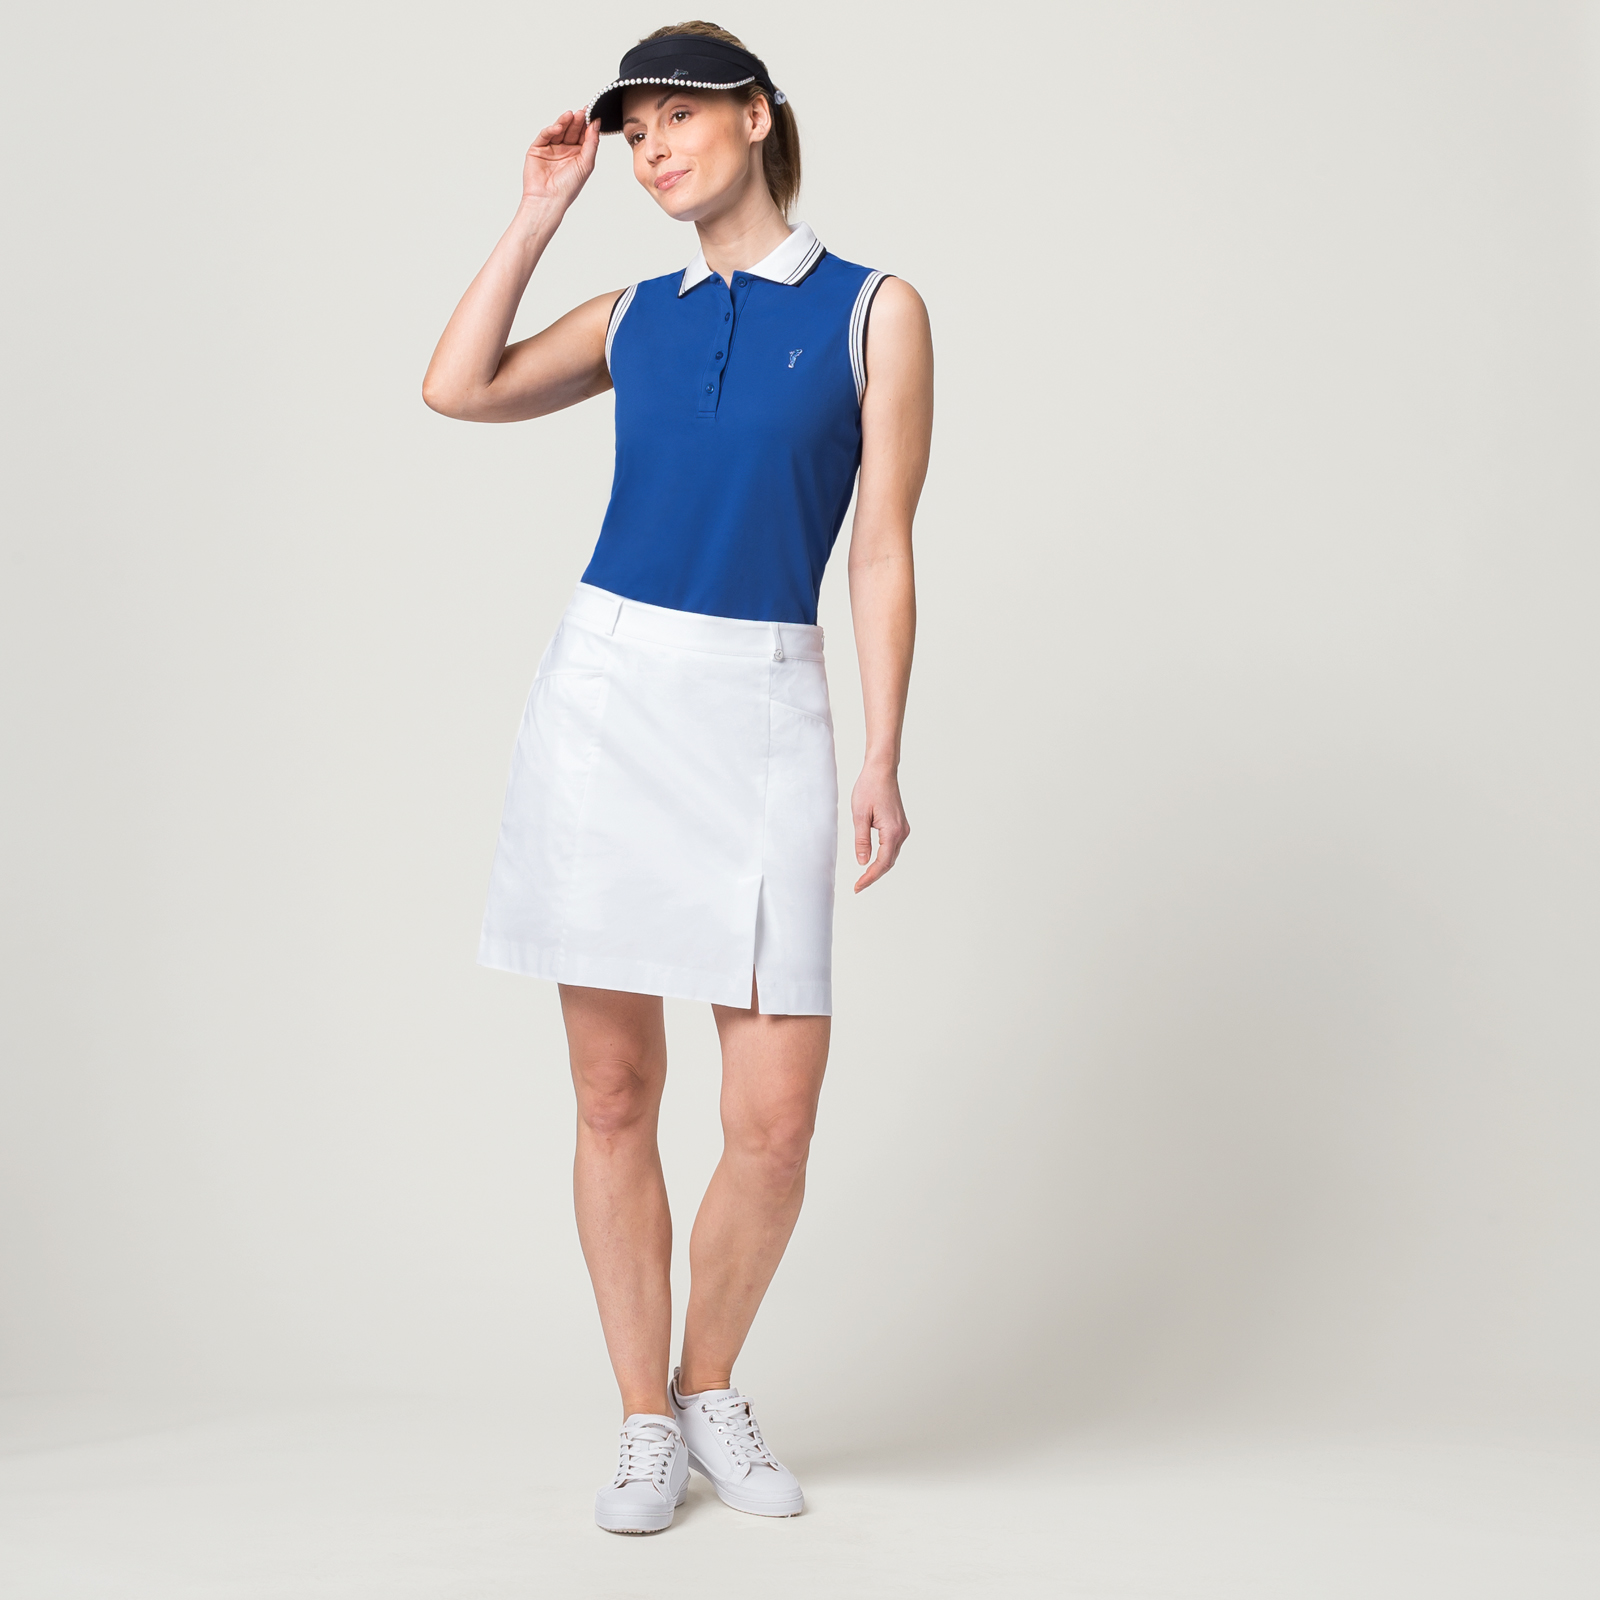 Ärmelloses Damen Golfpolo in Slim Fit mit Sonnenschutz